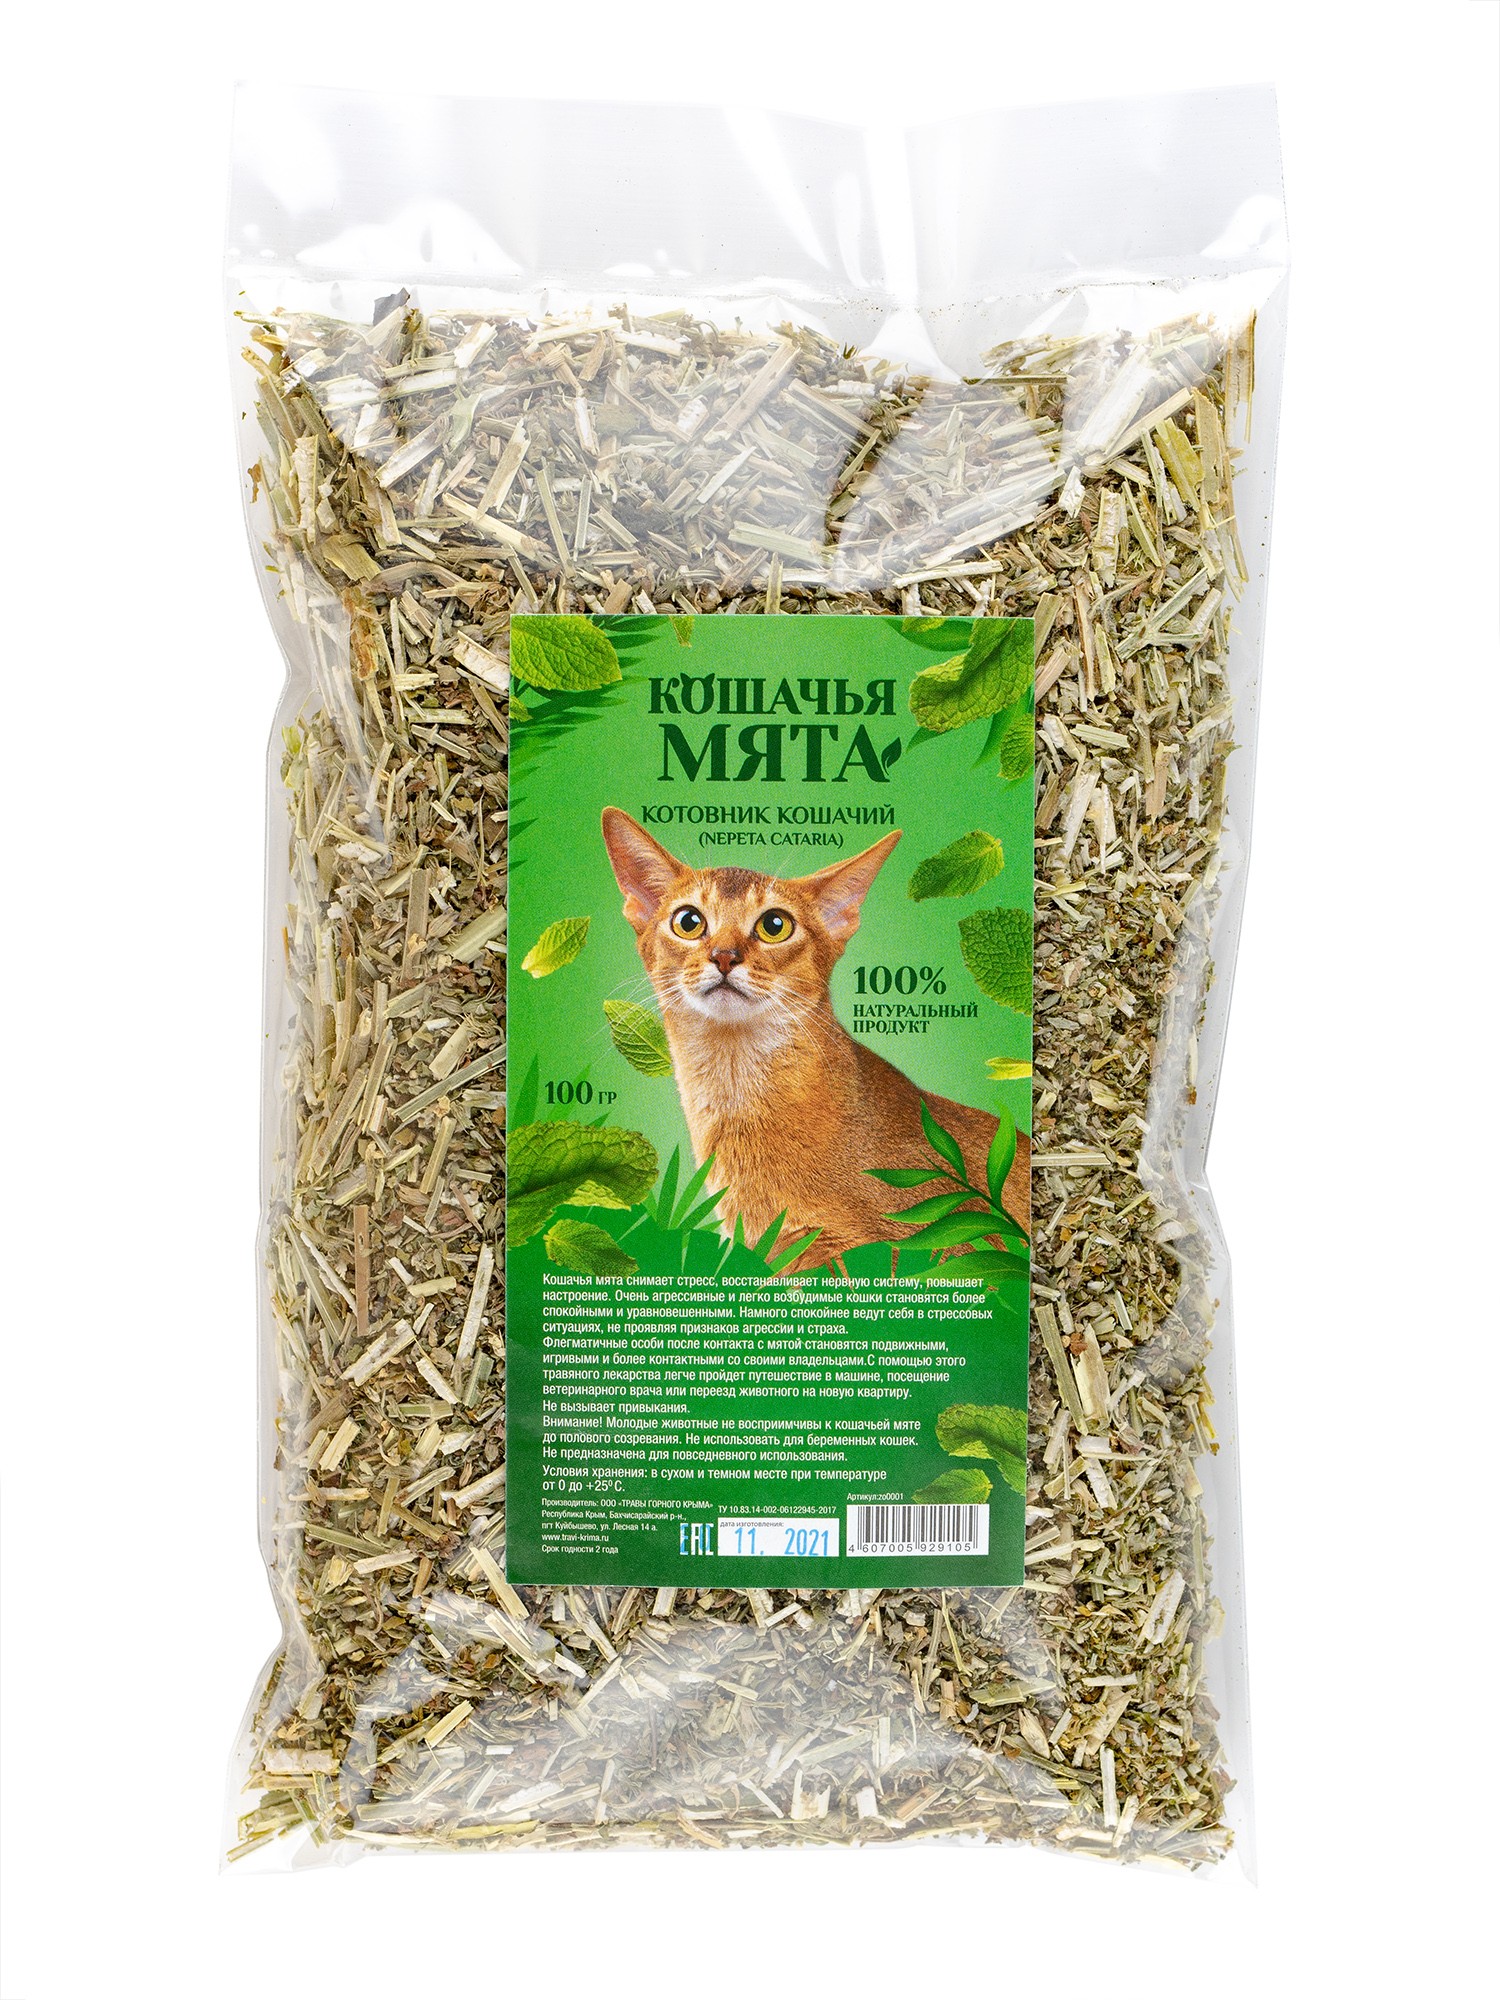 Кошачья мята (котовник кошачий) - купить лечебные травы недорого в  интернет-магазине «Травы Горного Крыма»